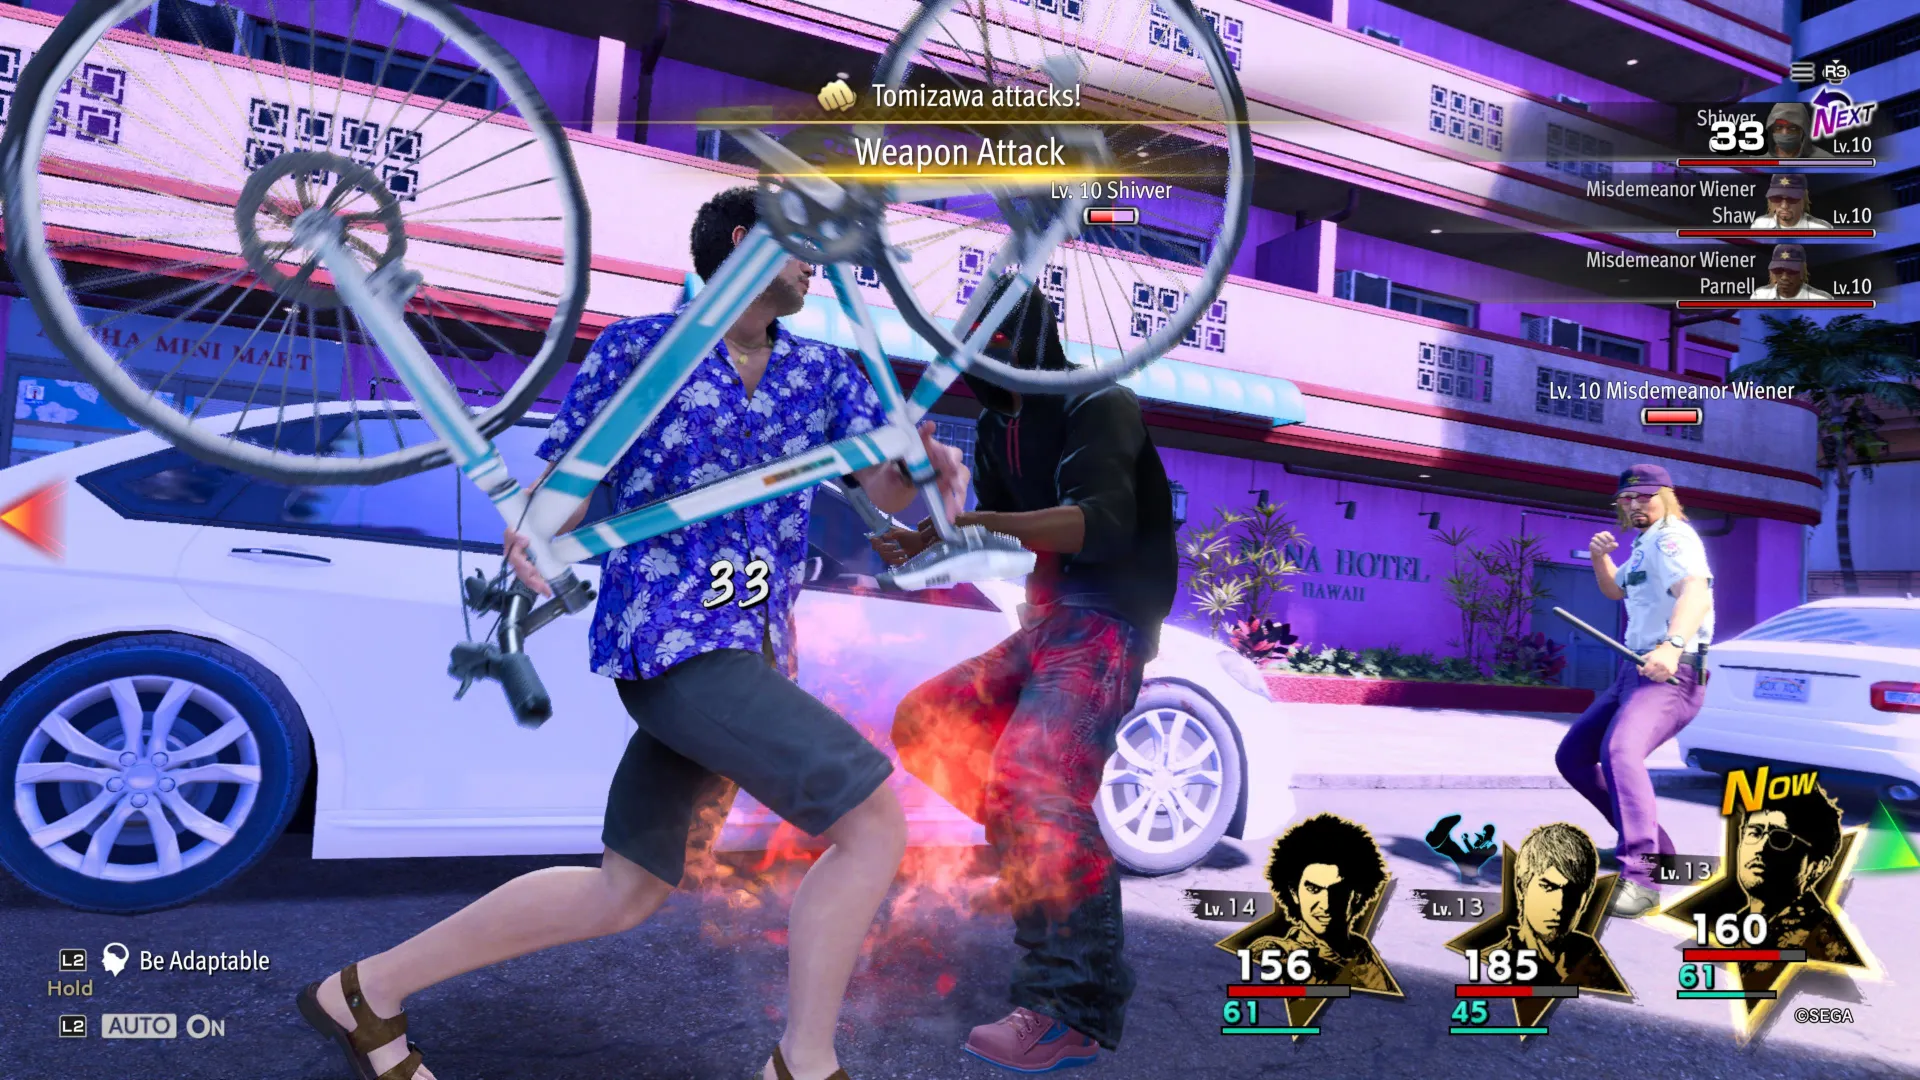 Как дракон: бесконечное богатство, Томизава использует велосипед в качестве оружия